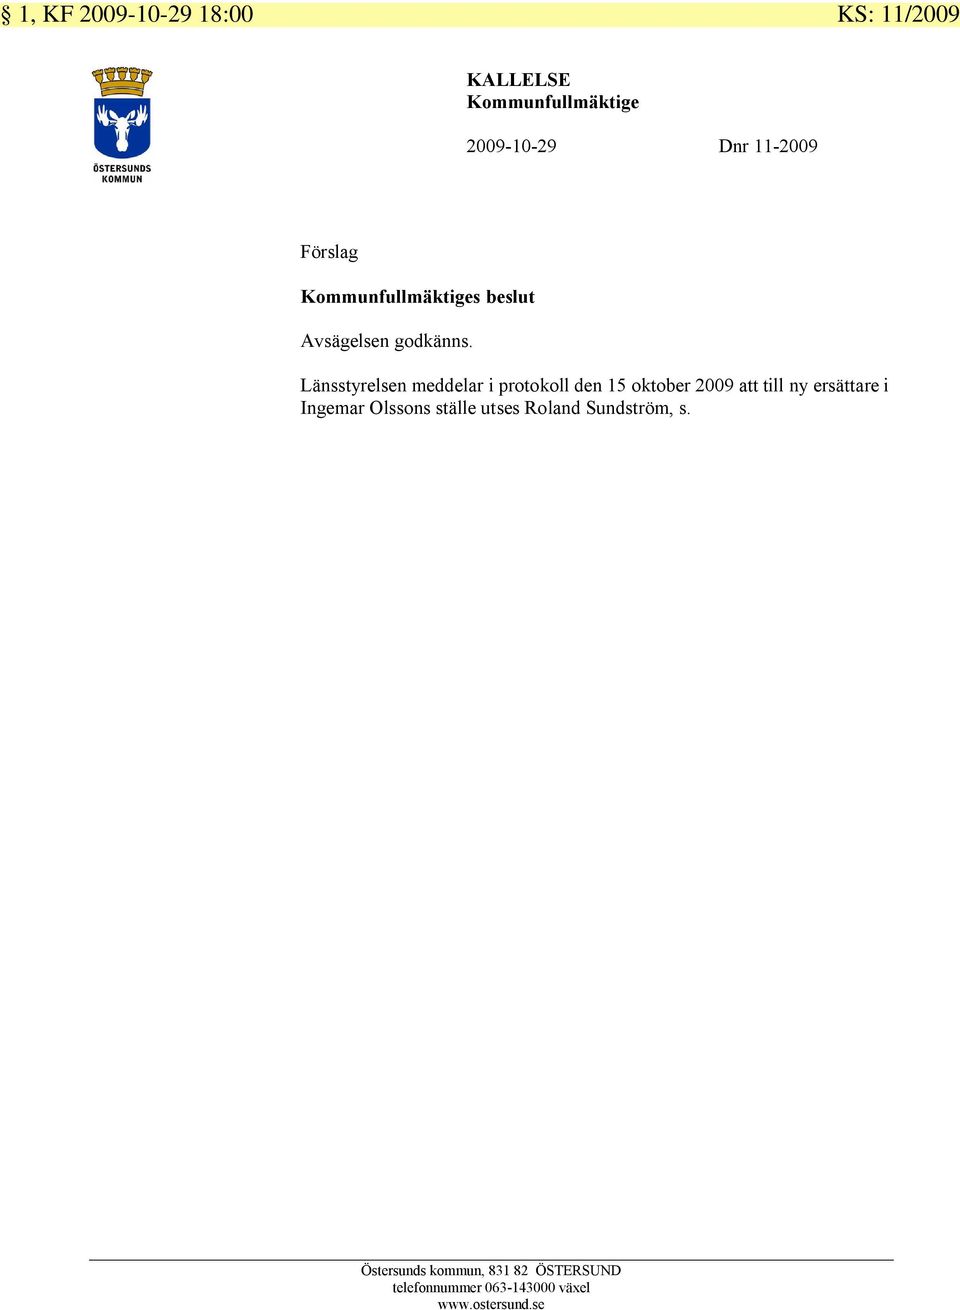 Länsstyrelsen meddelar i protokoll den 15 oktober 2009 att till ny ersättare i Ingemar